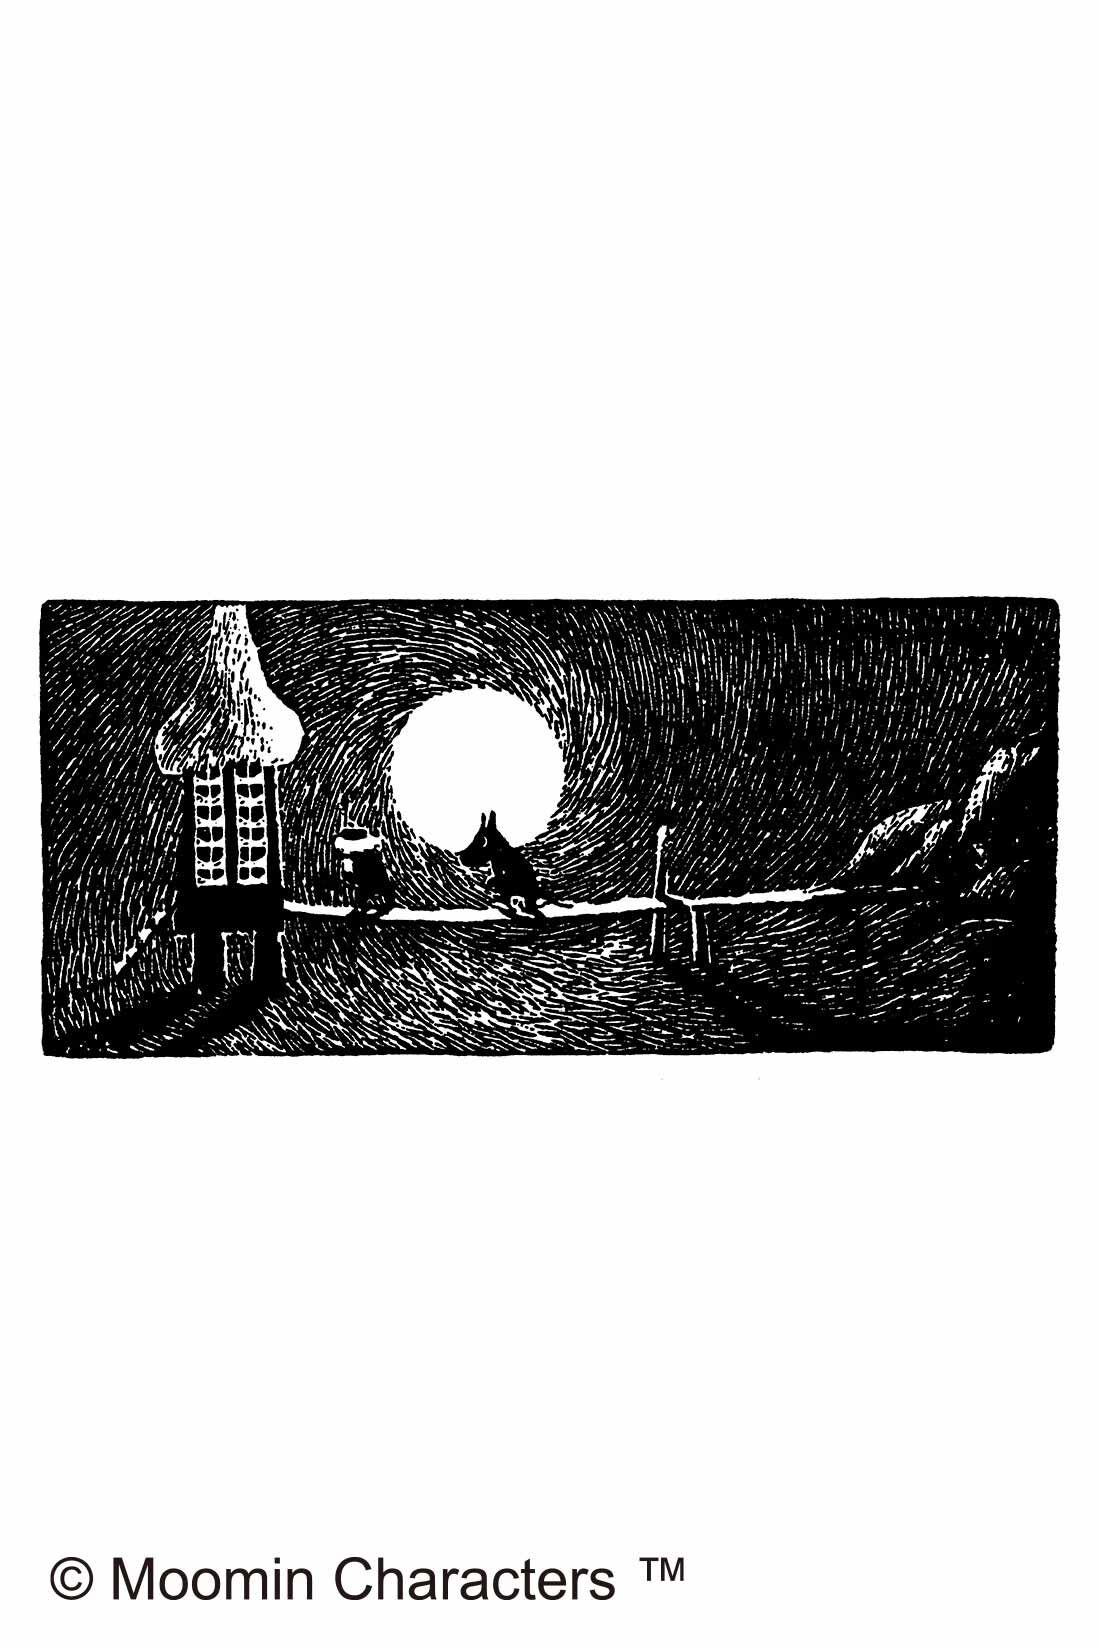 シロップ．|ムーミン小説の世界を楽しむ　しっかりまちのななめ掛けバッグ|ムーミンが水あび小屋に向かうシーン『ムーミン谷の冬』から。大きな月が印象的。